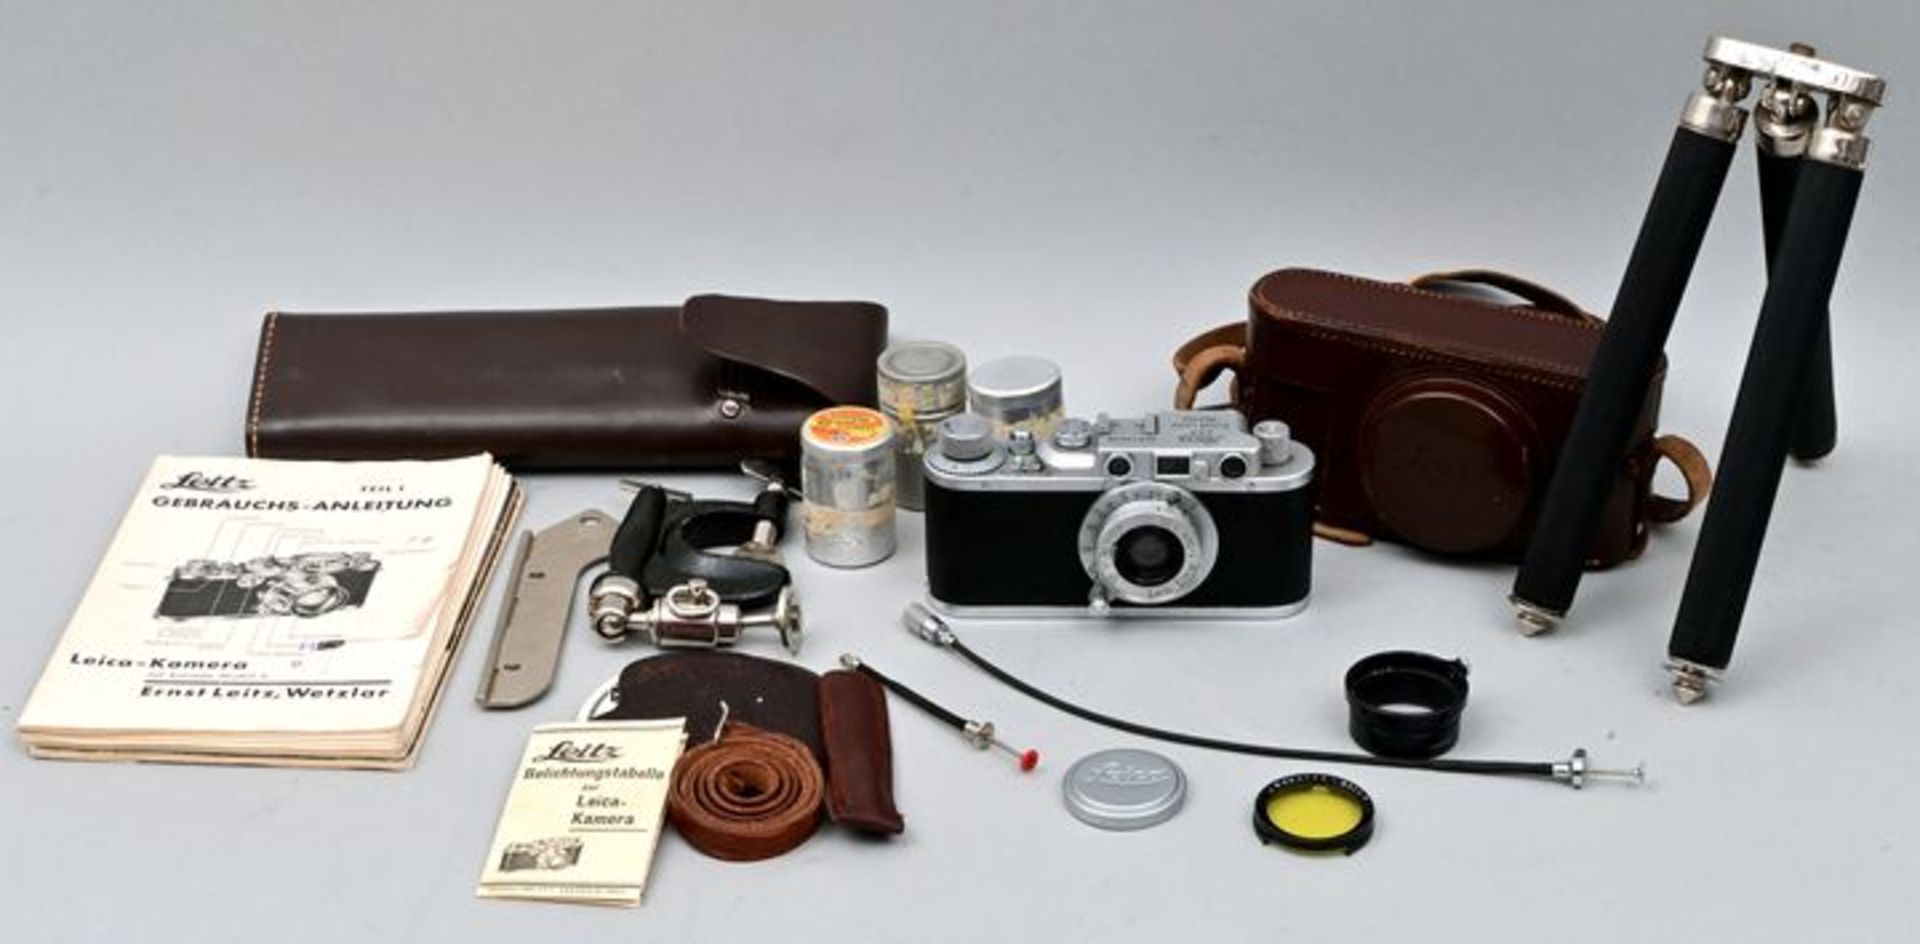 Leica Kamera mit Zubehör / Leica camera